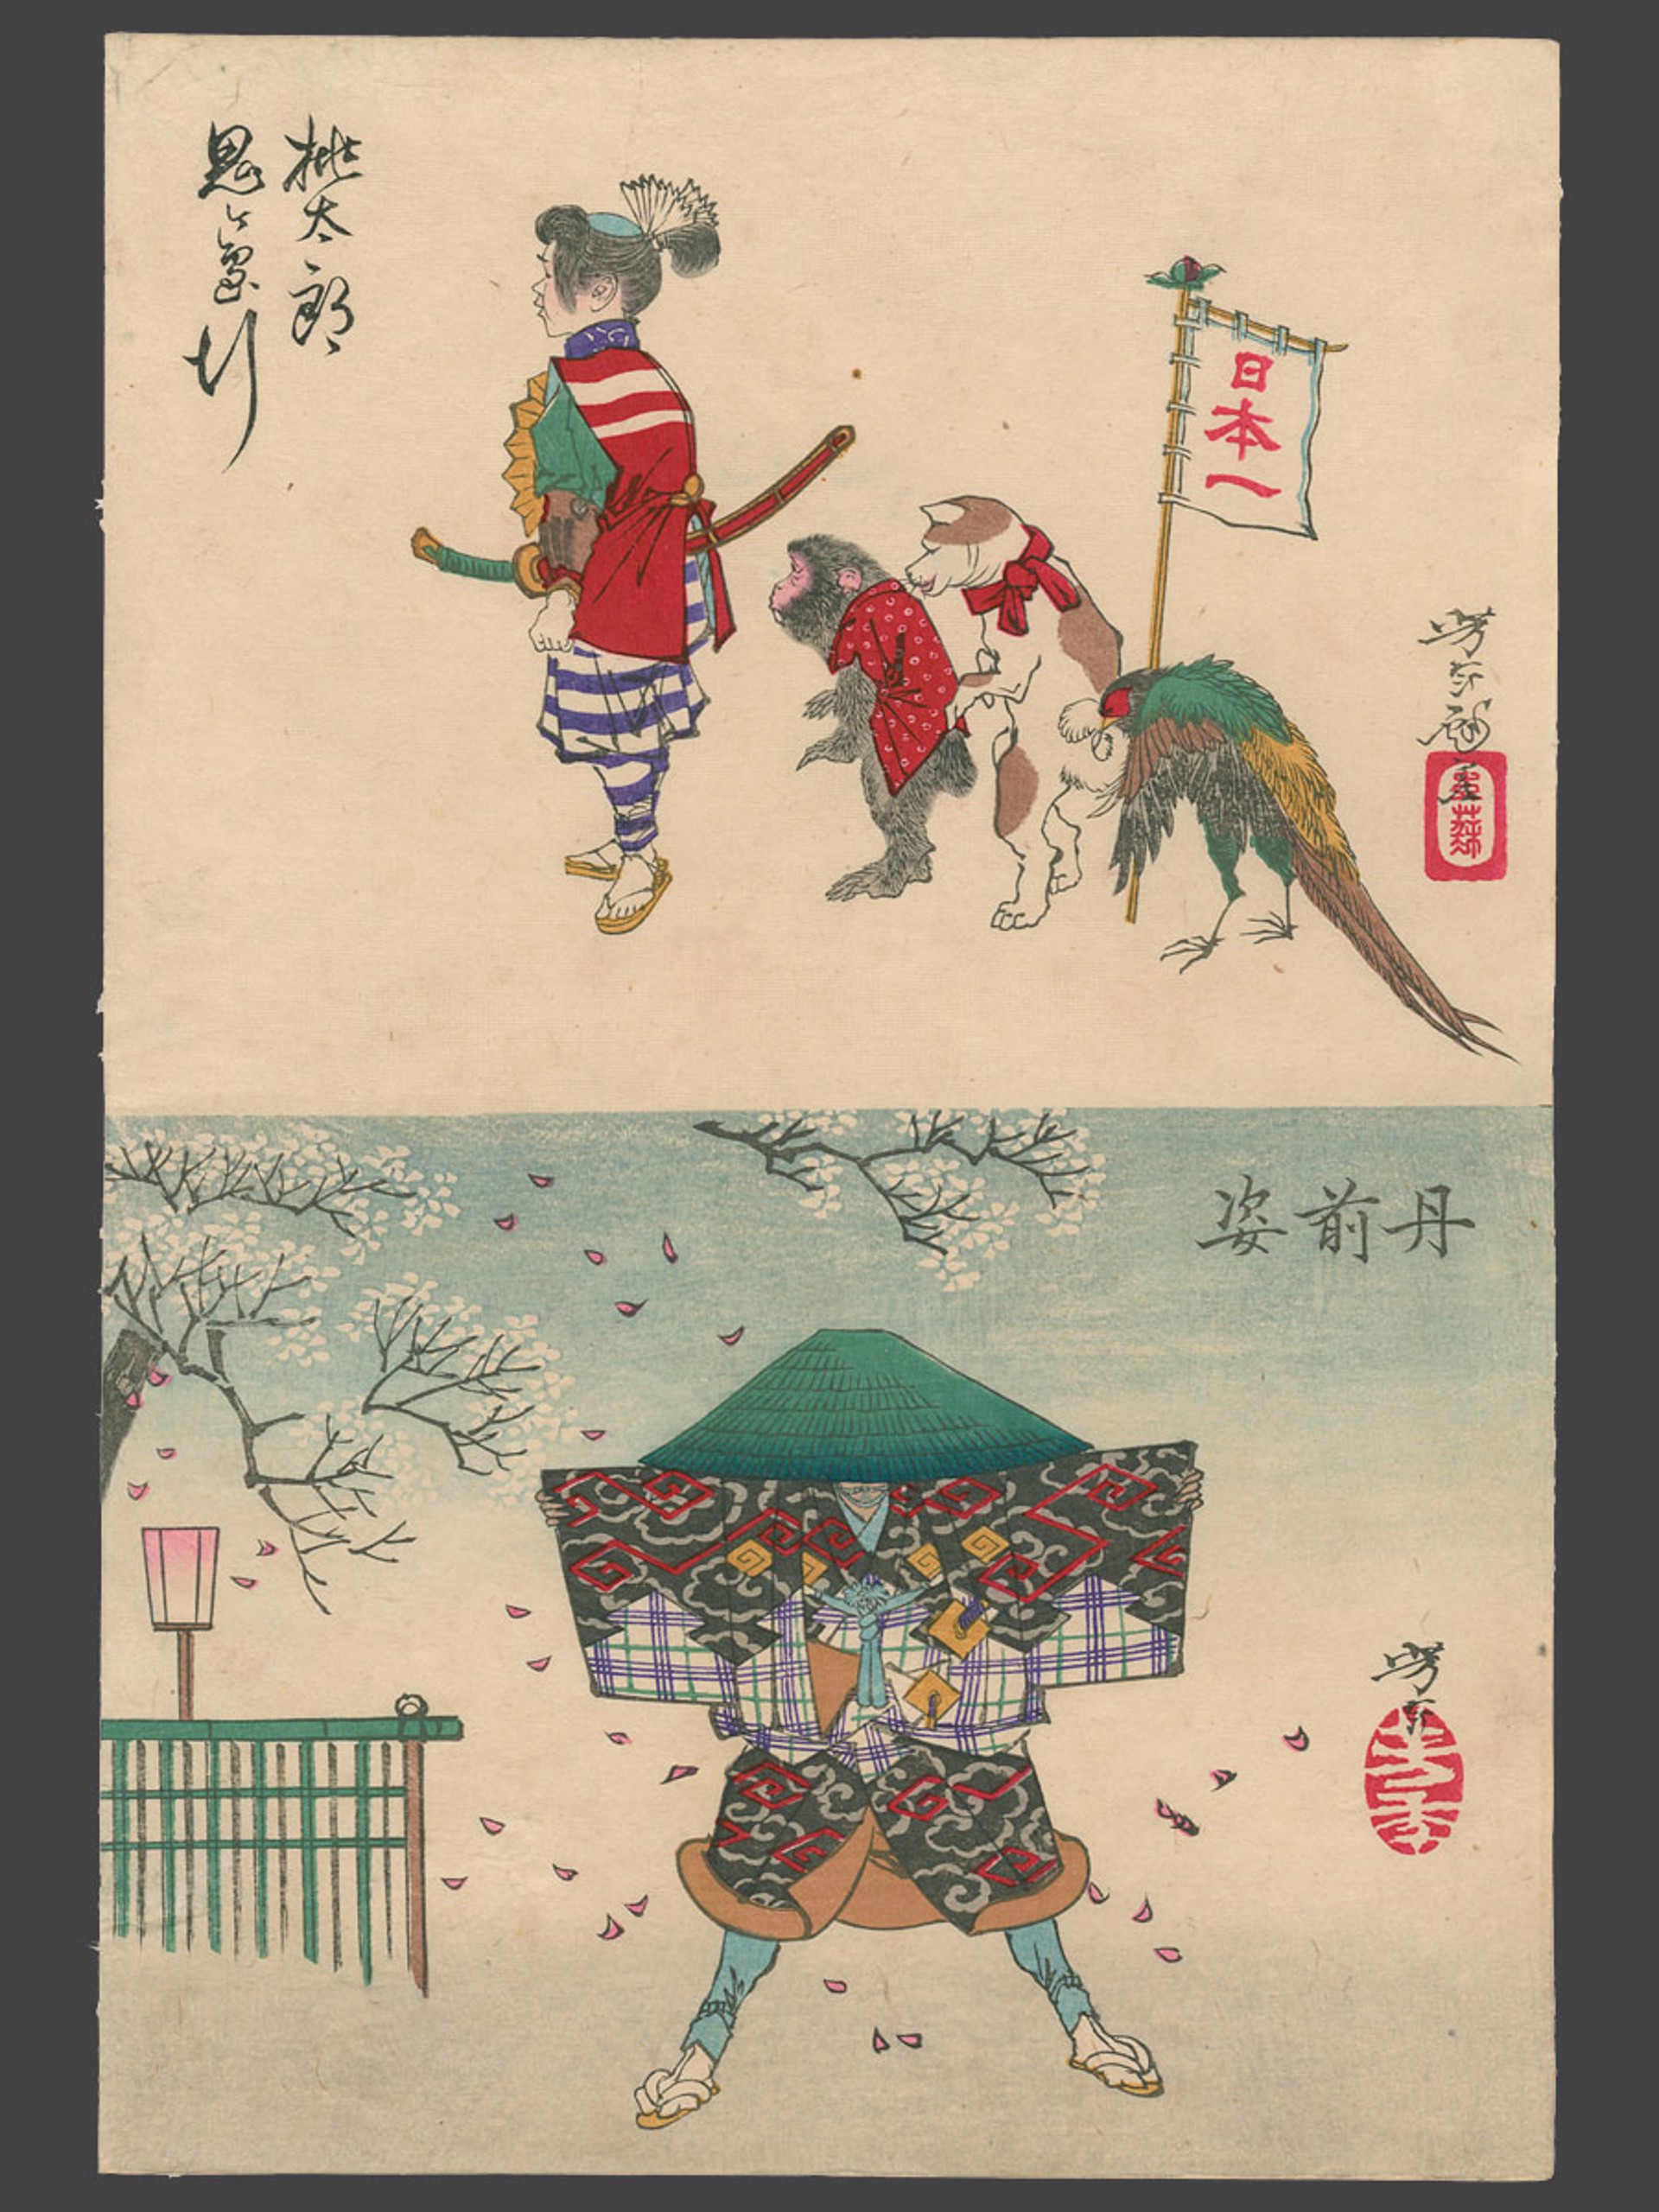 Uncut Chubans: Top, Momotaro, Bottom, The Shape of a Padded Kimono (Tanzen Sugata) Sketches by Yoshitoshi by Yoshitoshi